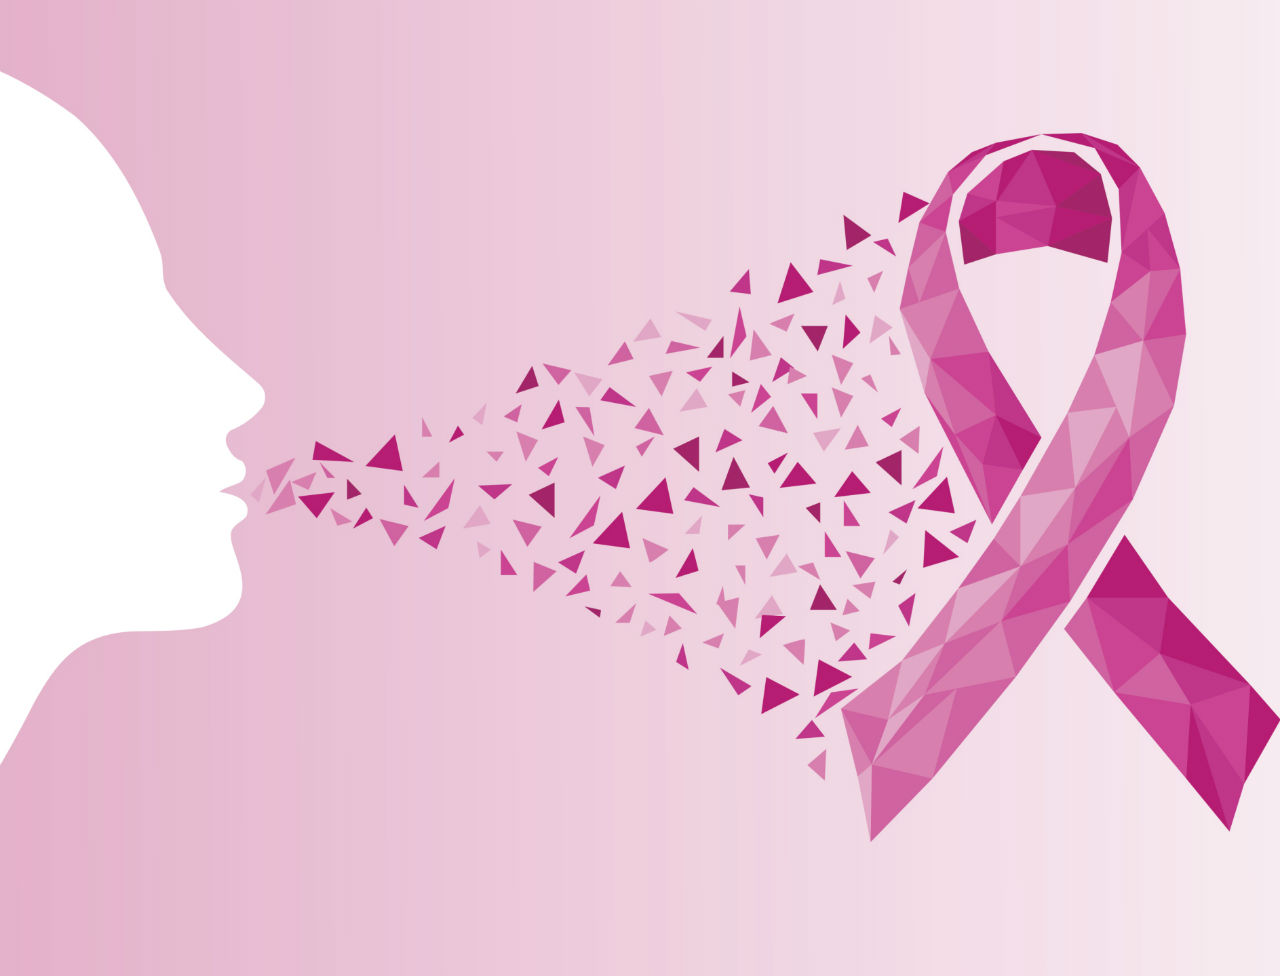 Cancer de sein : c’est parti pour le mois d’octobre consacré à la lutte contre la maladie﻿